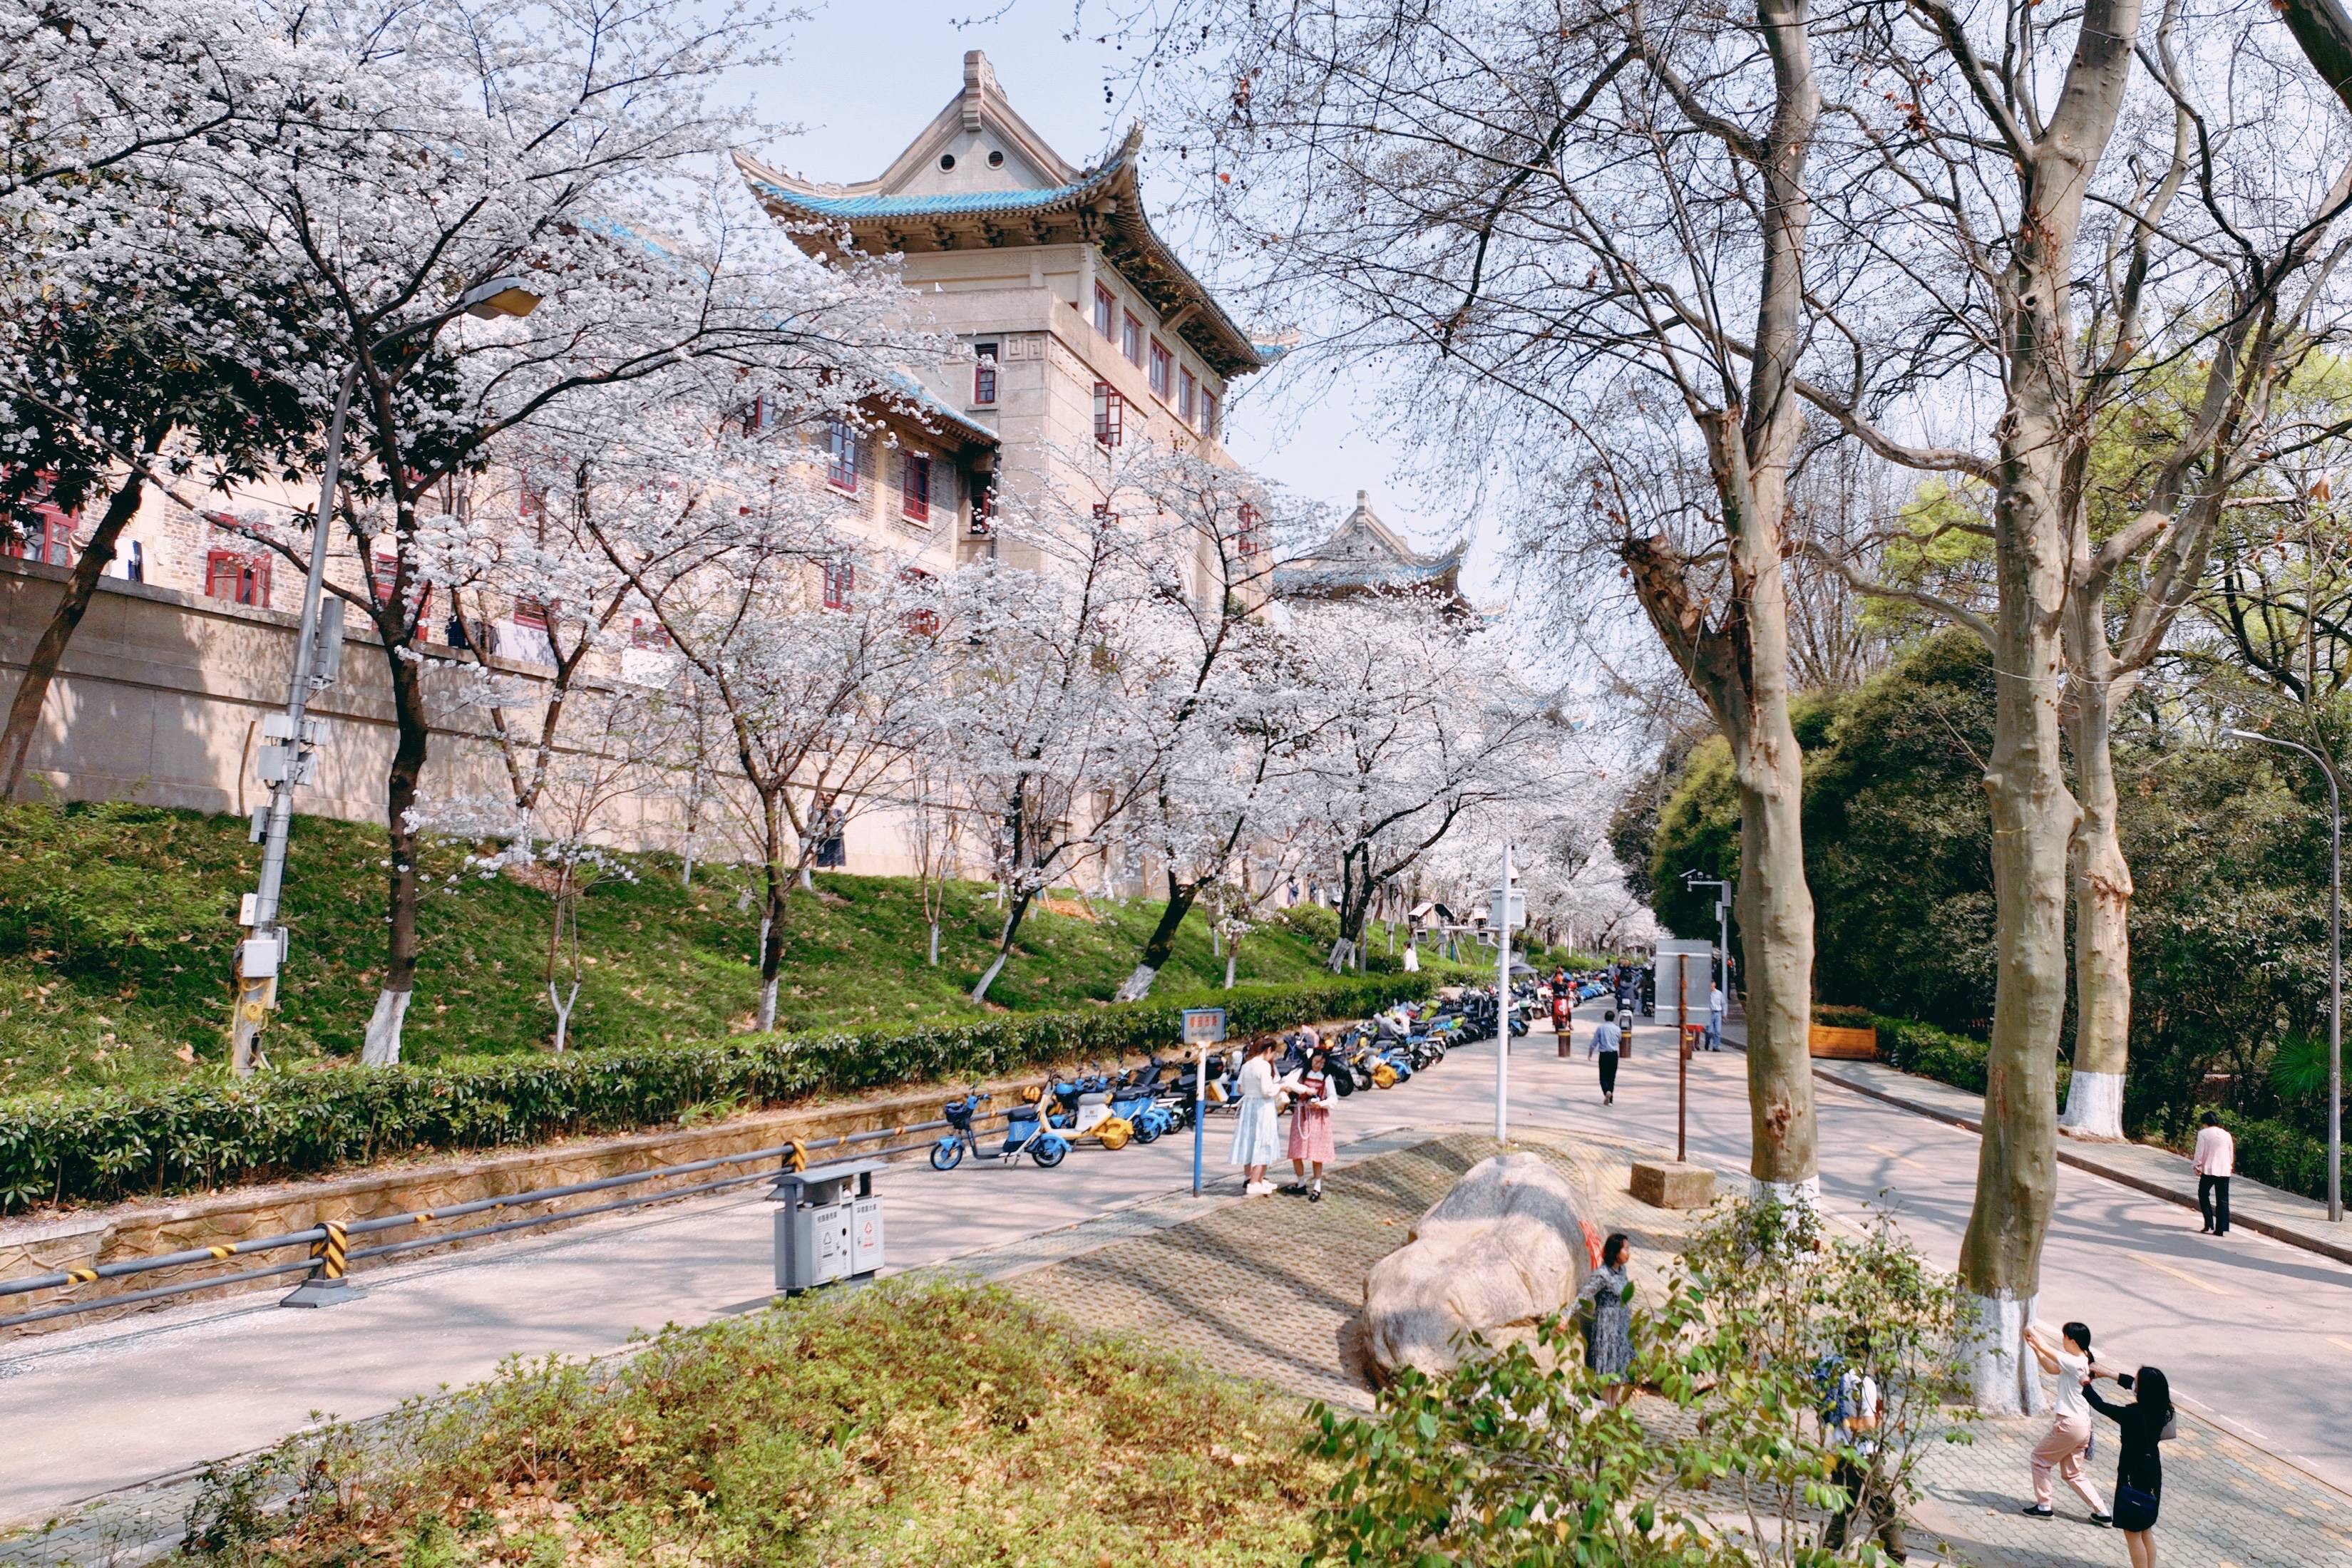 原创武汉大学樱花盛开这座百年学府充满了静谧和唯美宛如童话世界